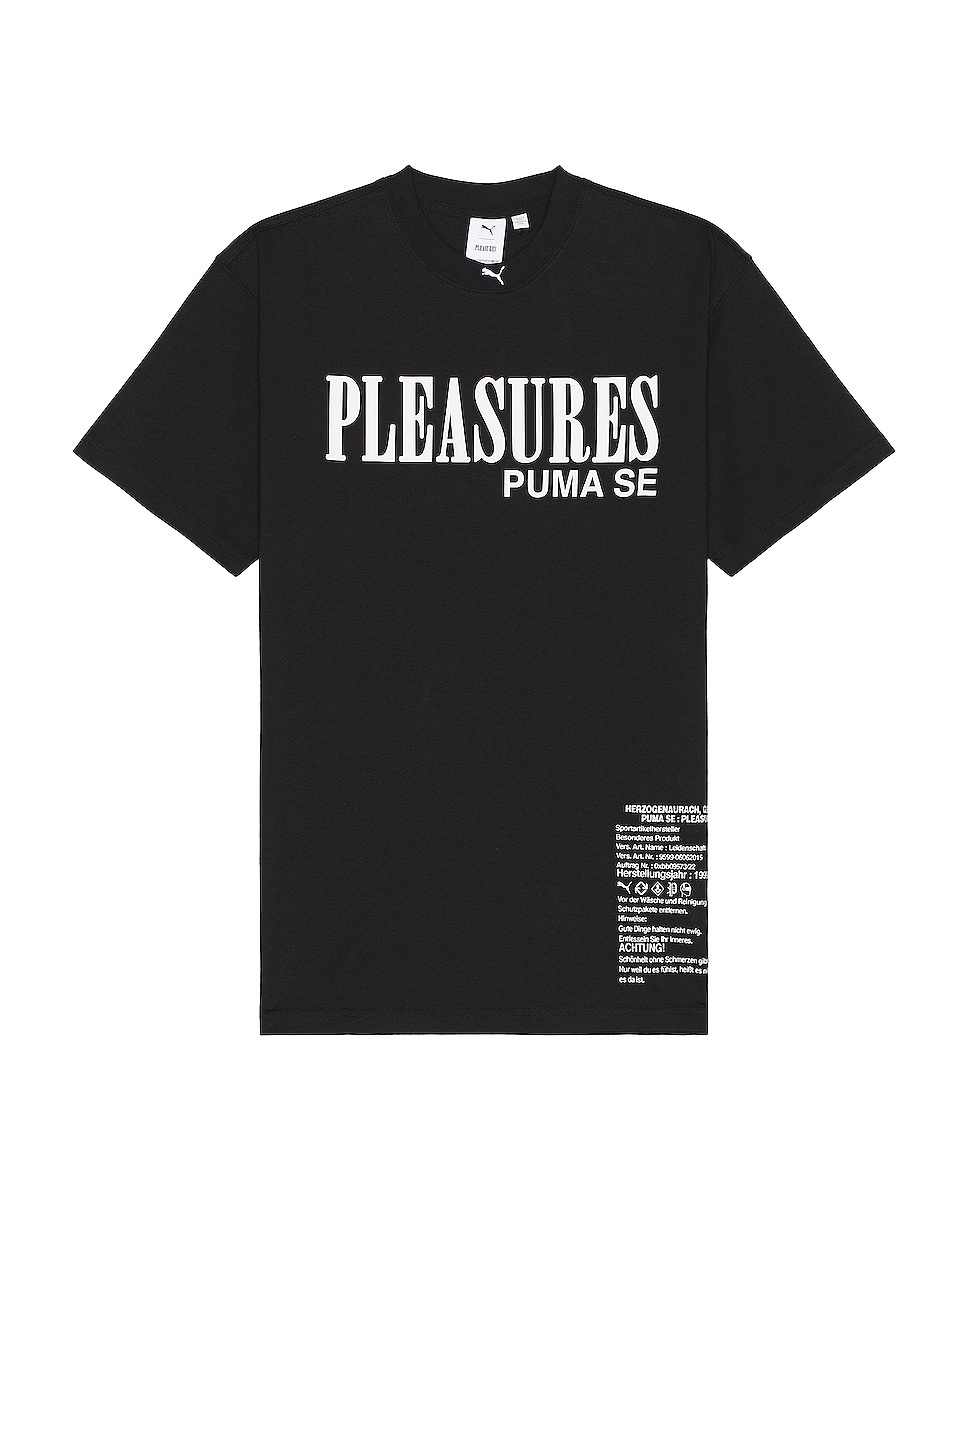 X Pleasures Typo Tee - 1